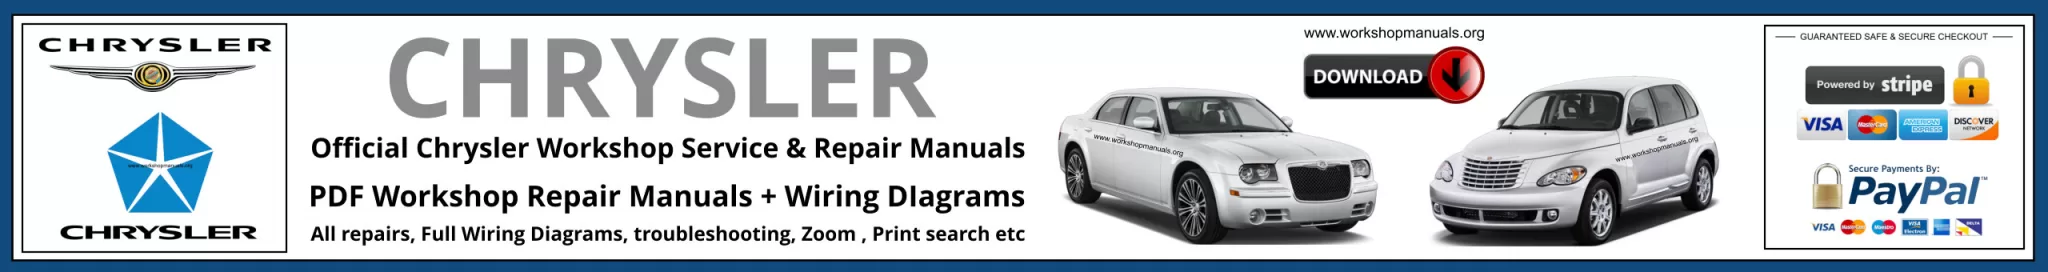 Chrysler Workshop Repair Manual Banner